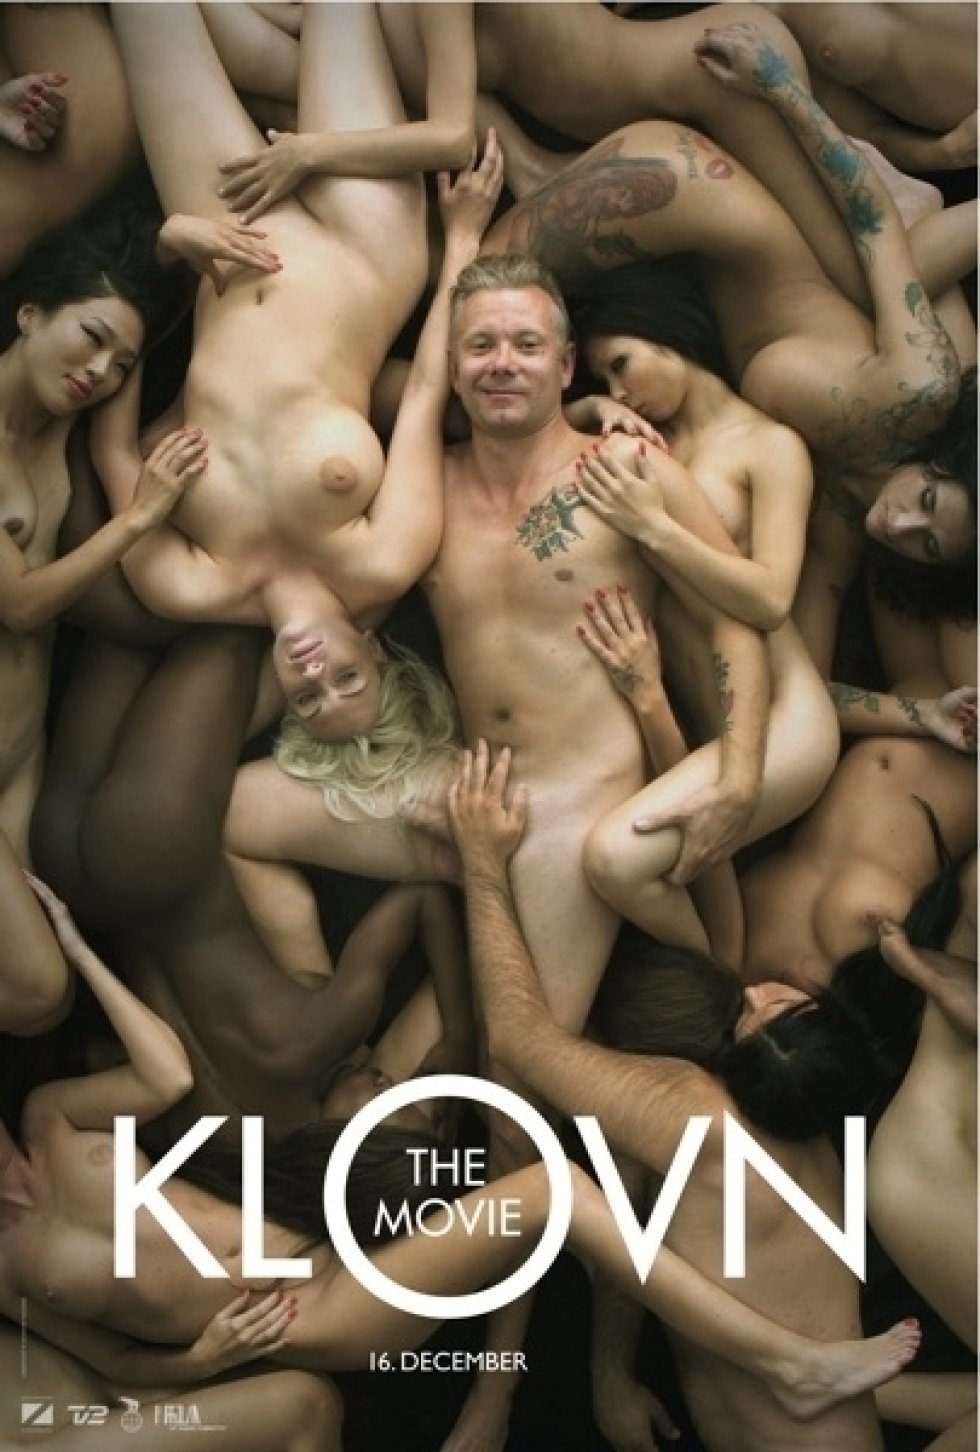 KLOVN - The Movie